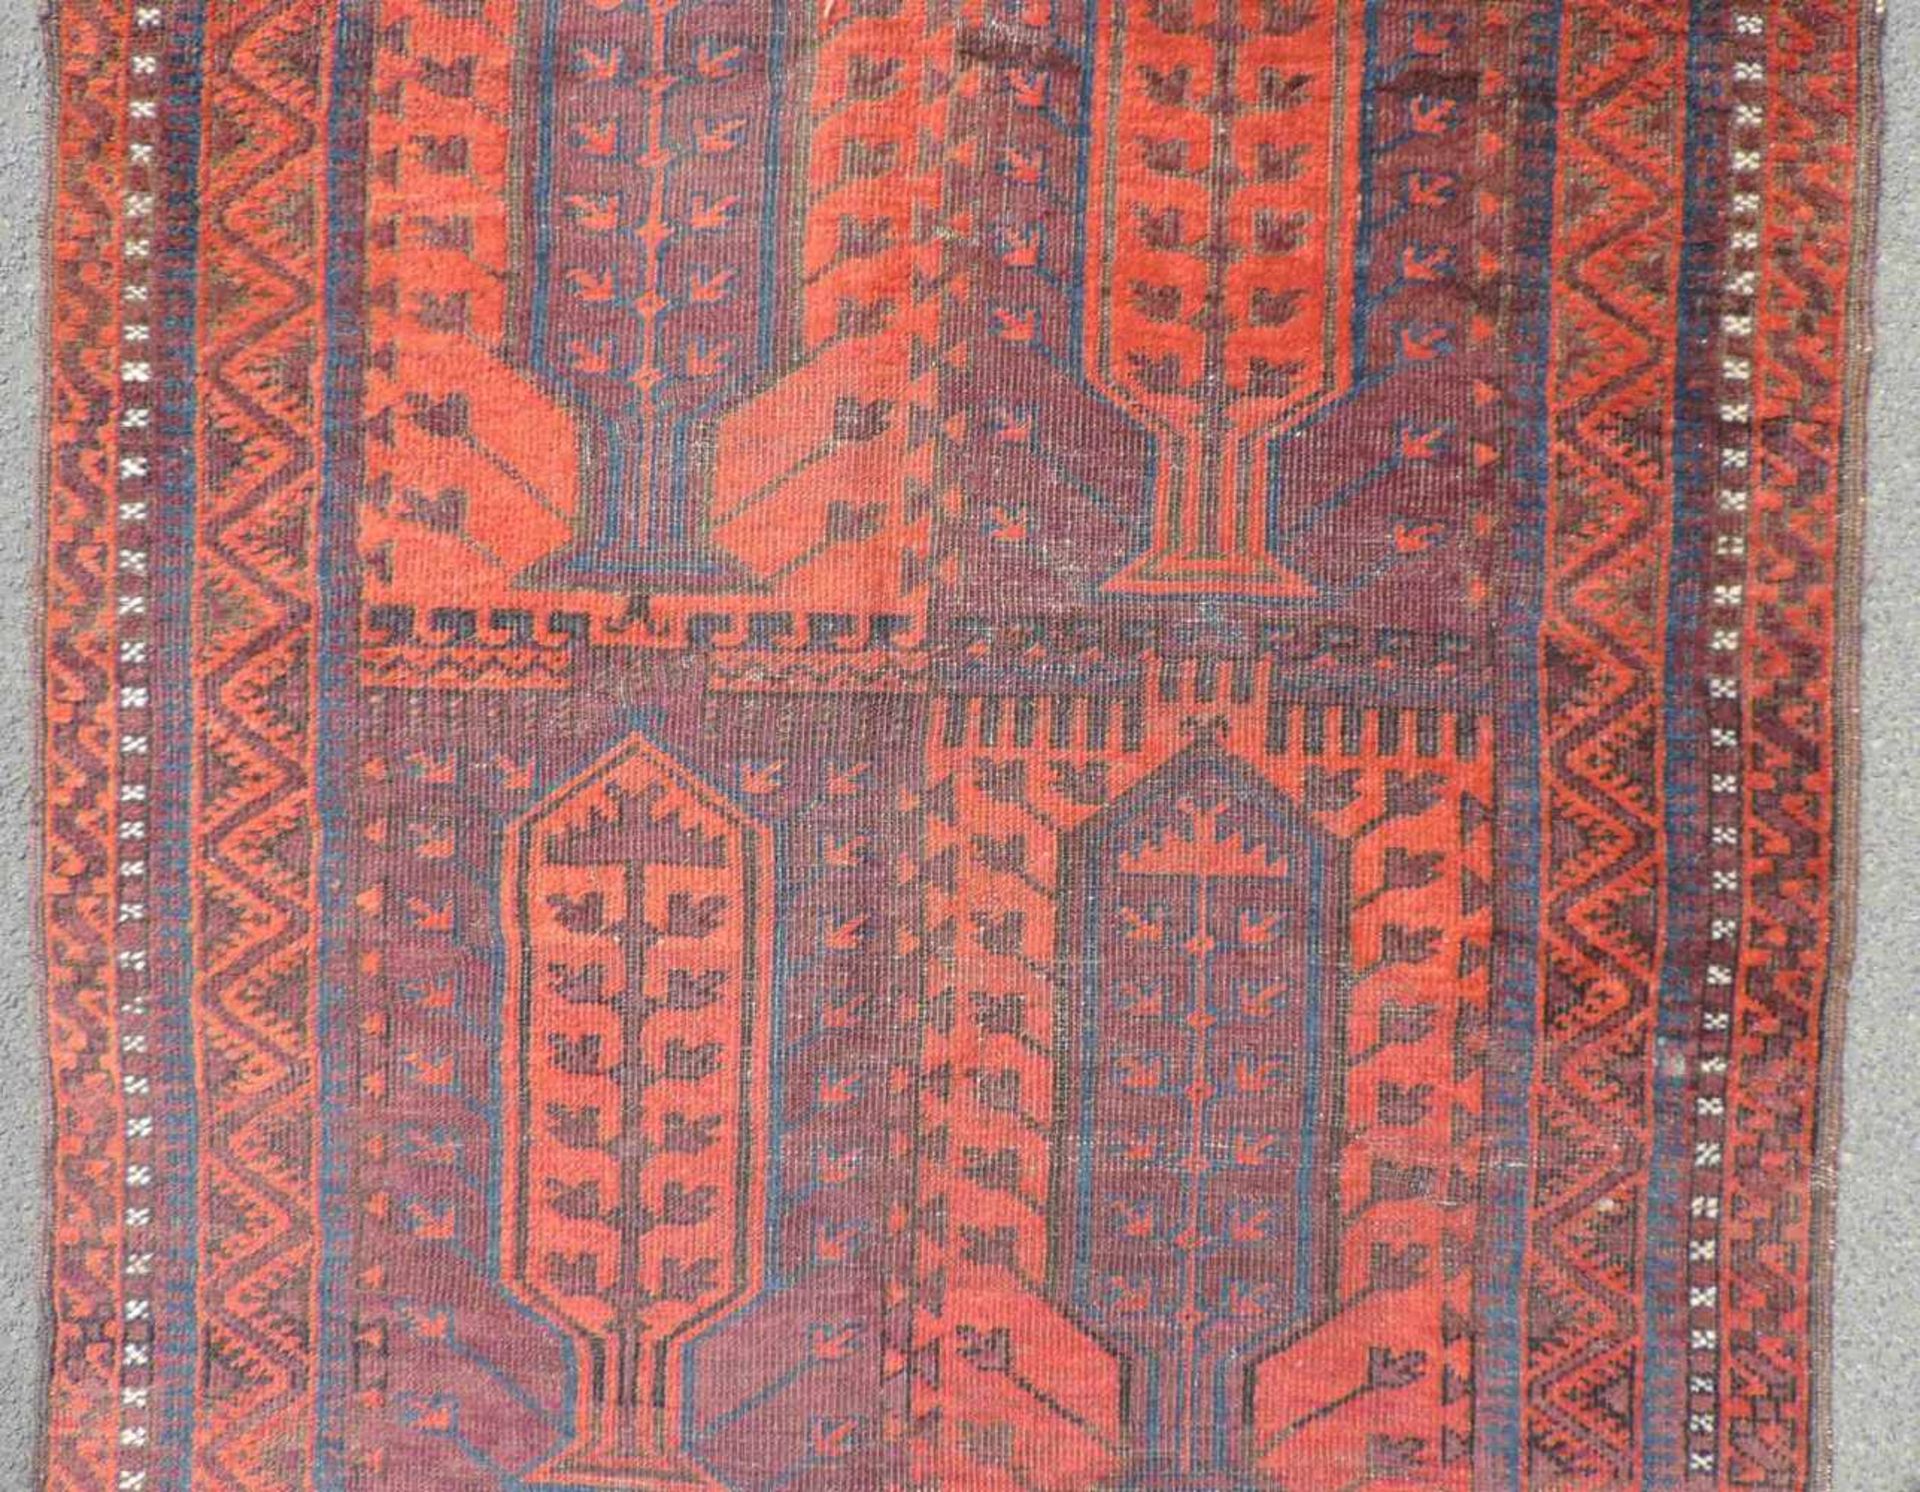 Belutsch Stammesteppich. Afghanistan. Antik, um 1880.369 cm x 104 cm. Handgeknüpft. Wolle auf Wolle. - Image 8 of 11